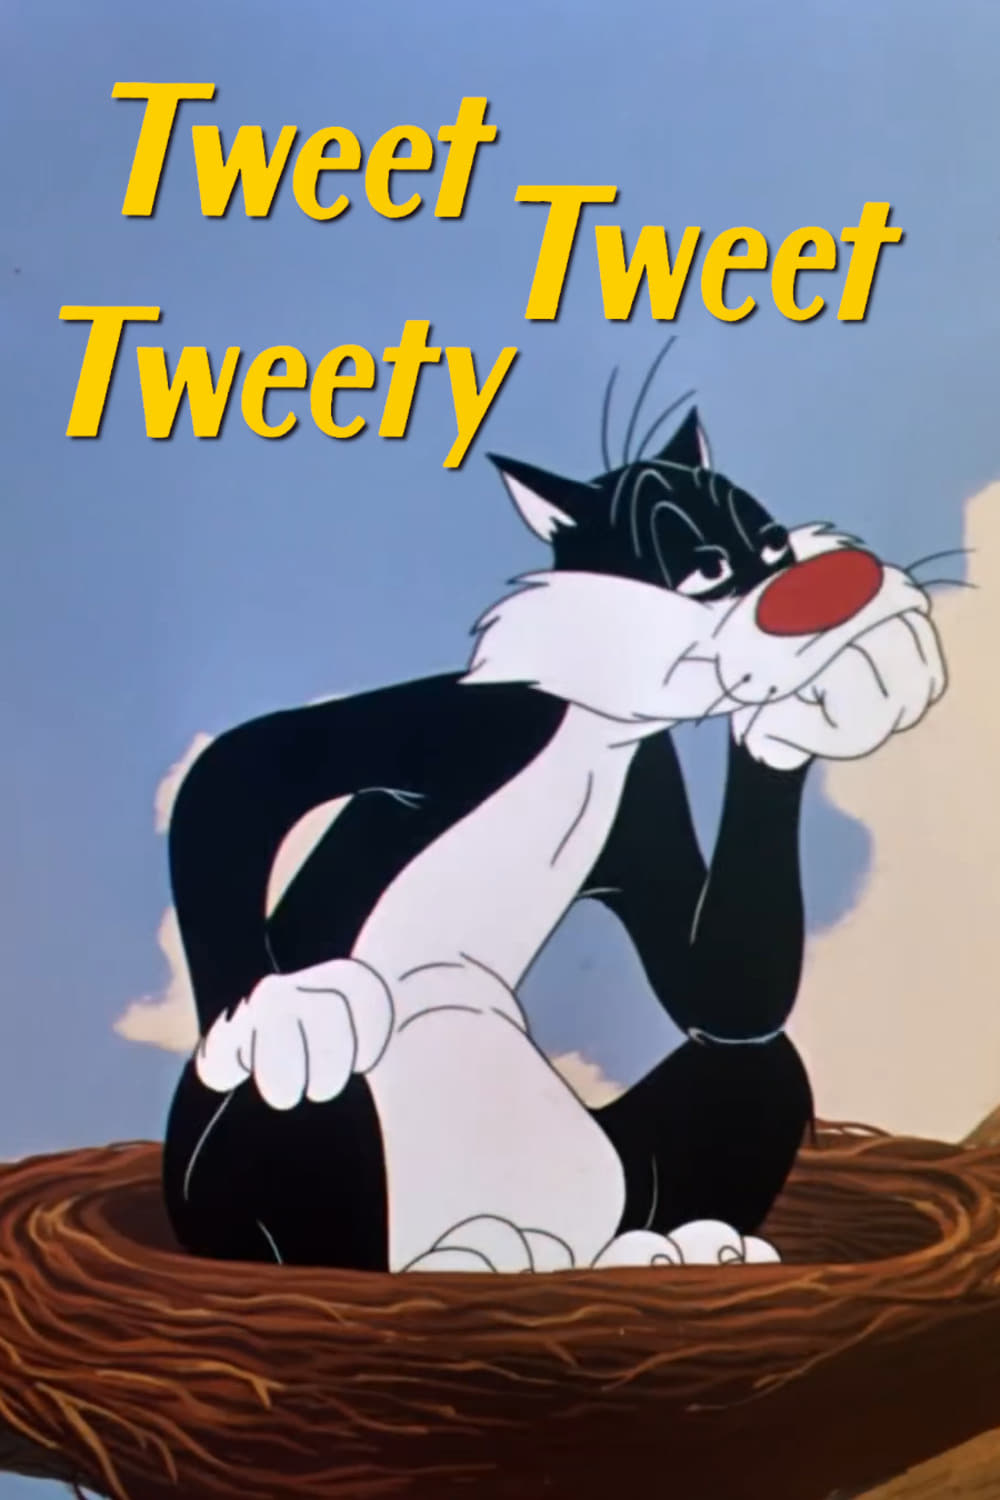 Tweet Tweet Tweety (1951)